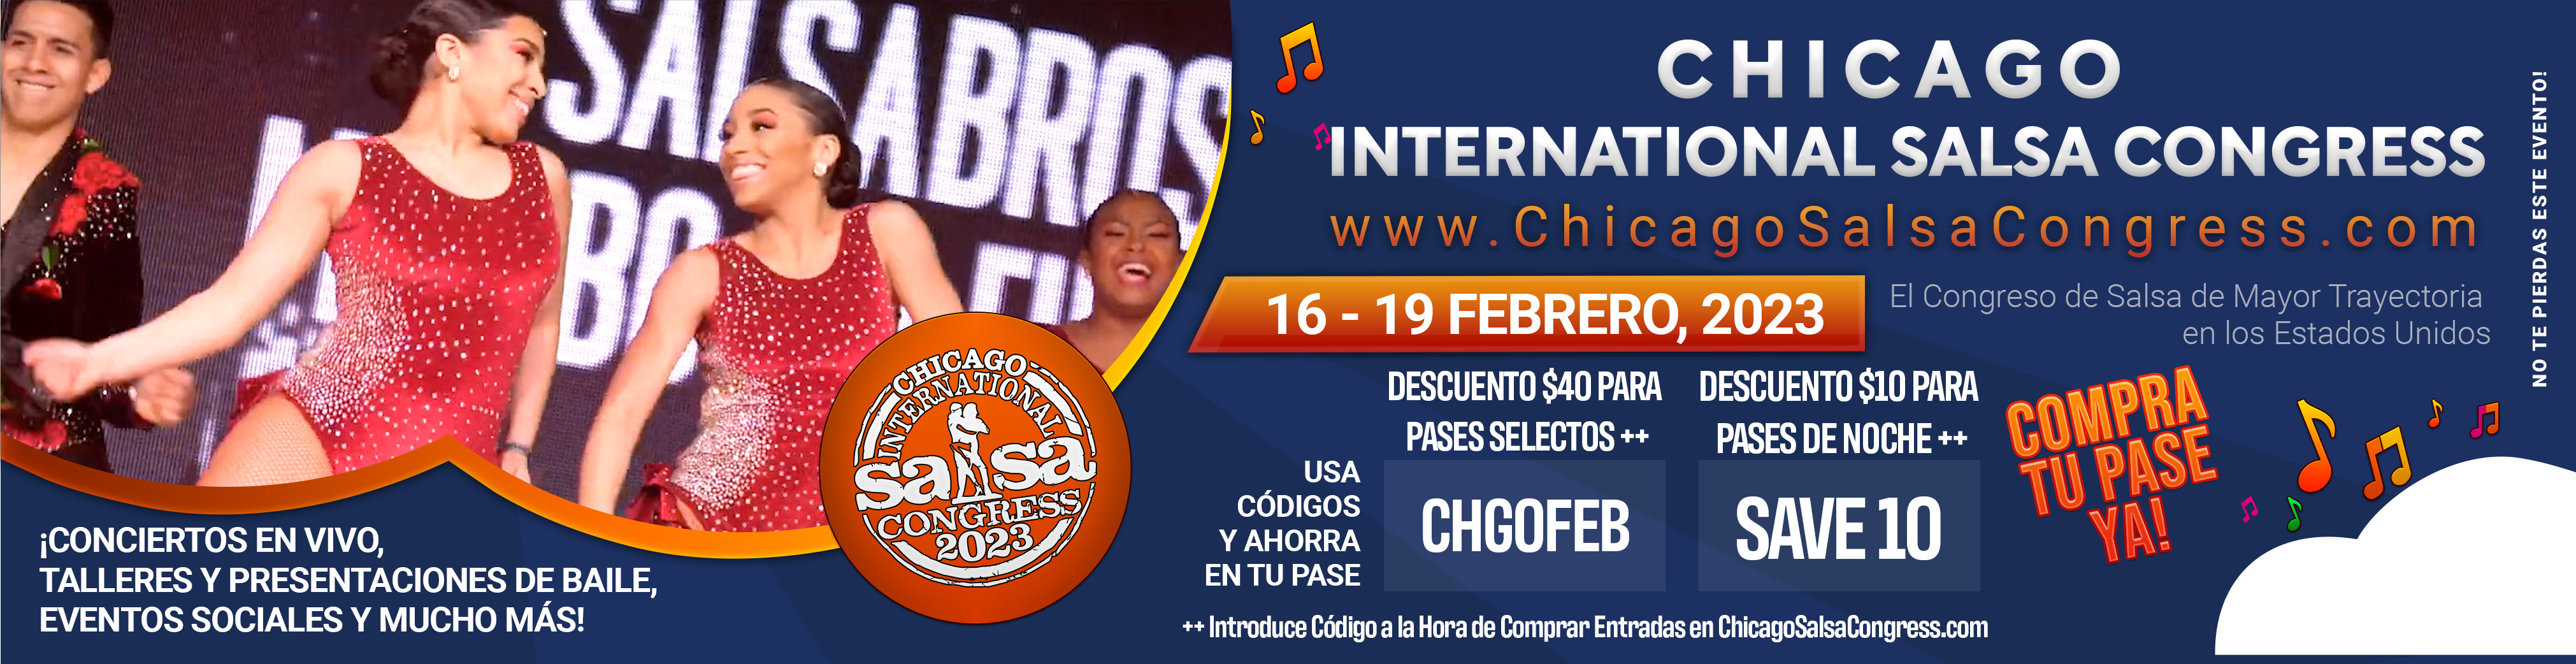 International Chicago Salsa Congress 2023 • Febrero 16 al 19 en el Westin O'Hare